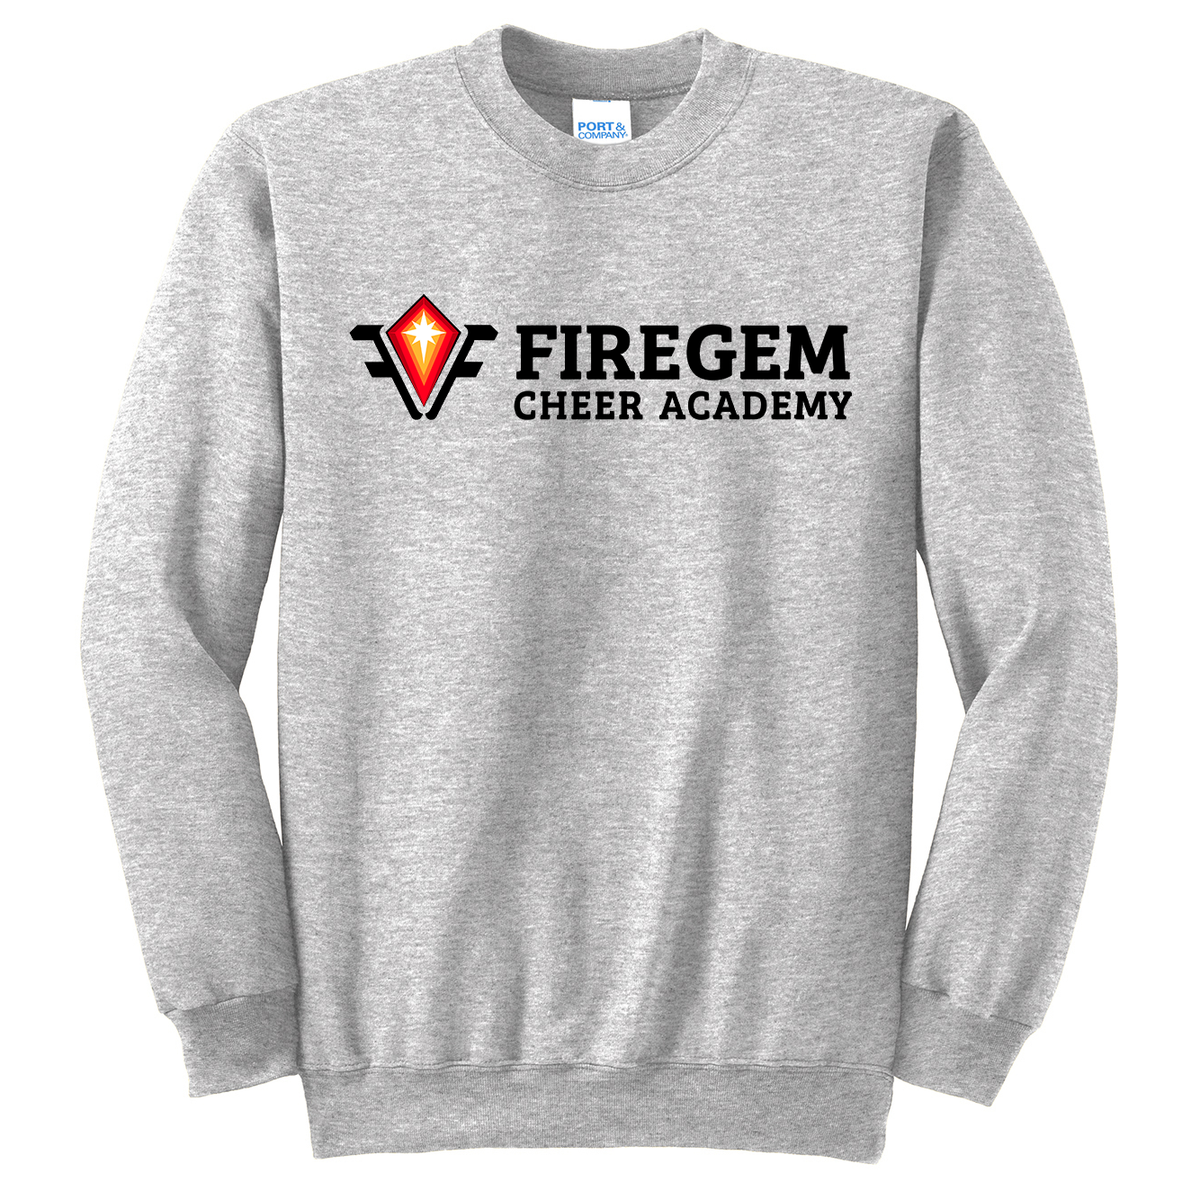 Firegem Cheer Academy Crew Neck Sweater